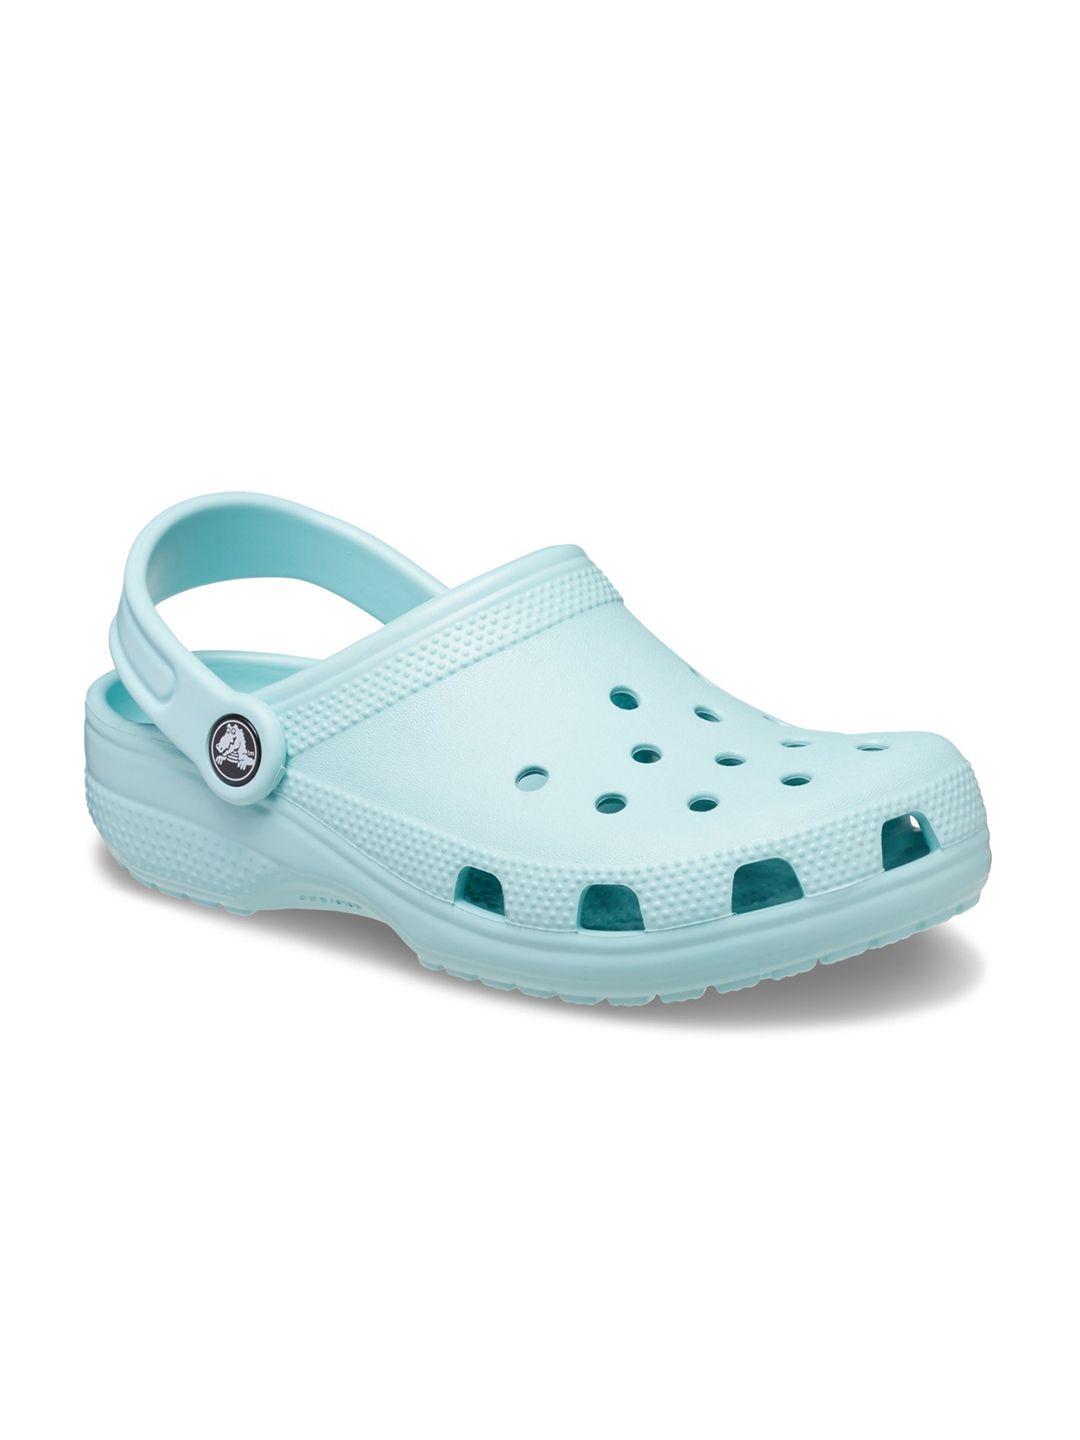 crocs kids blue classic sliders